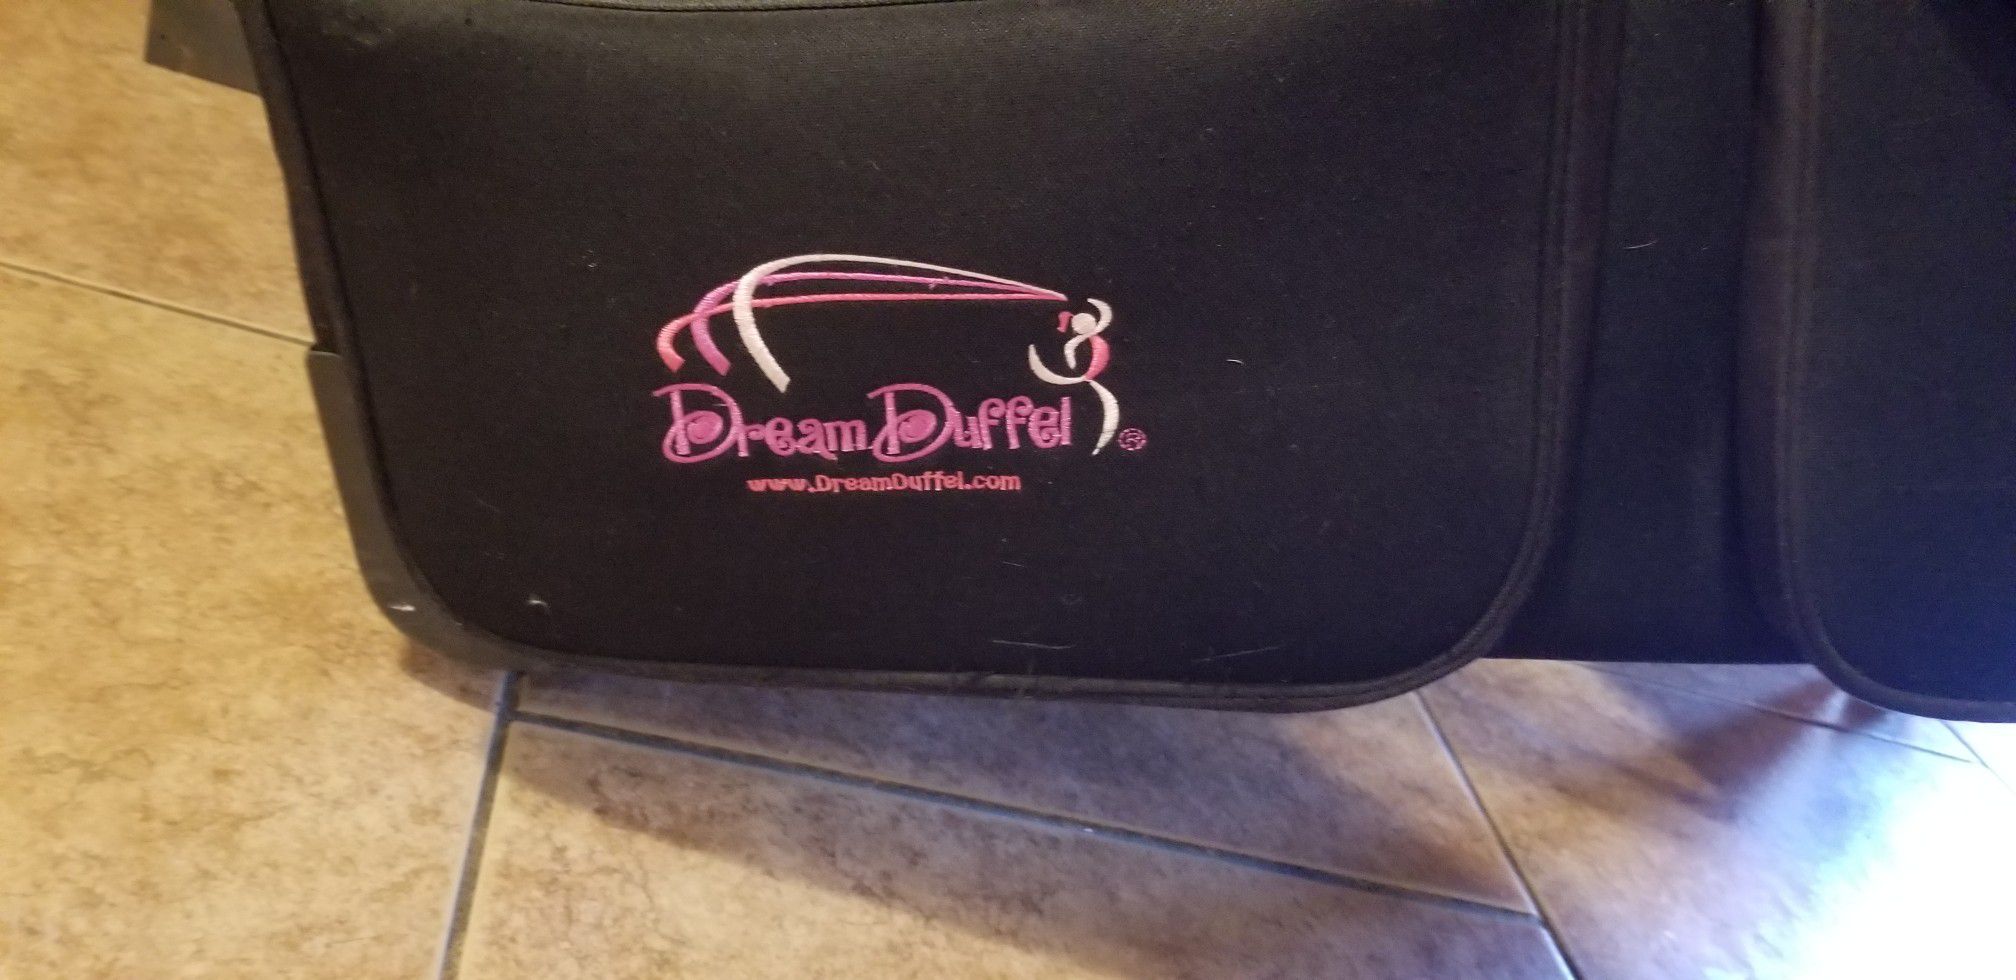 Dream duffel bag on wheels